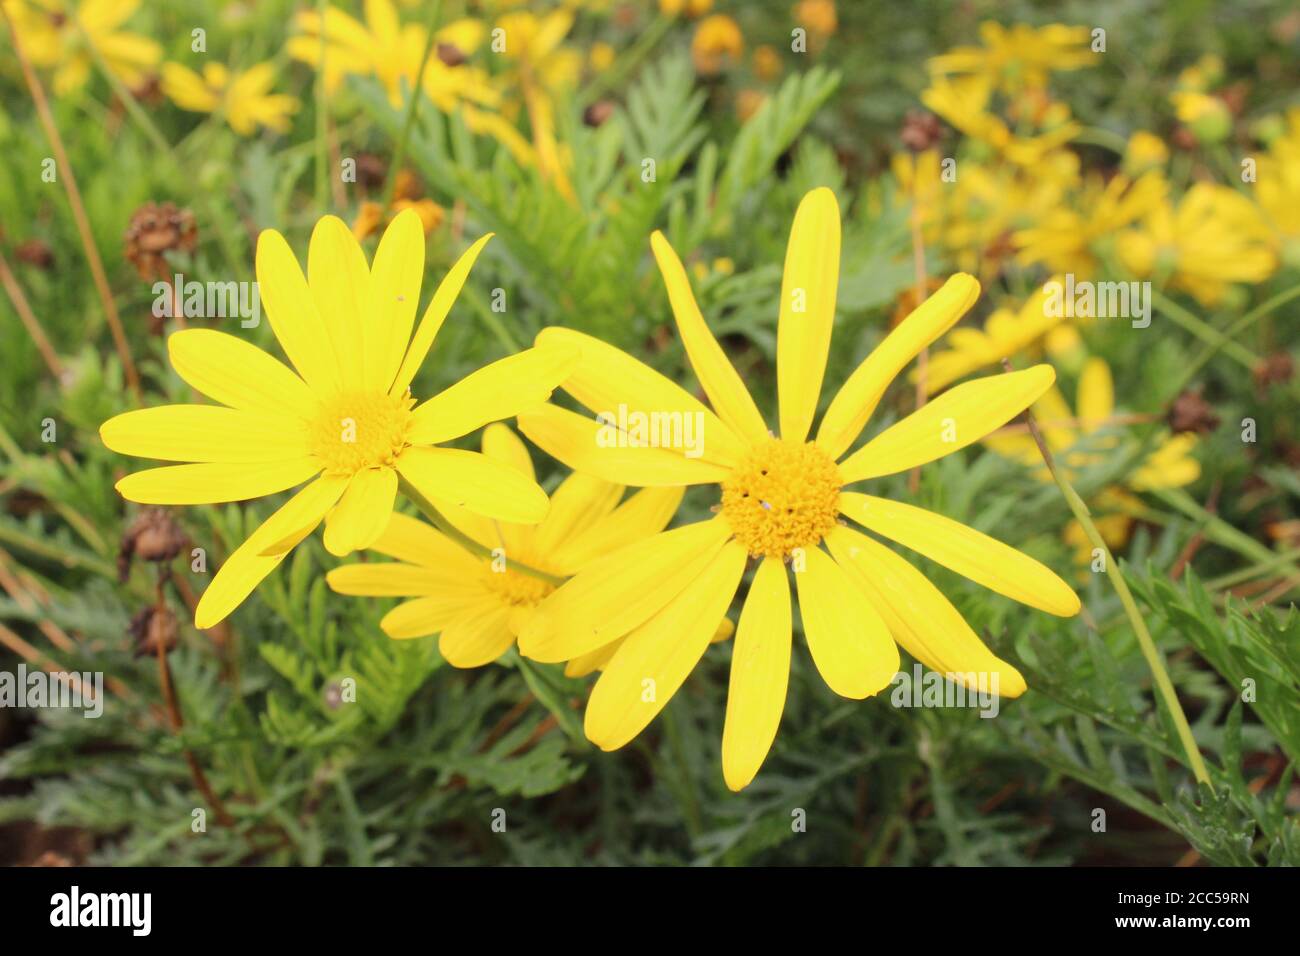 Stinkende willie Nahaufnahme von gelben Blüten von jacobaea vulgaris, dem gemeinsamen Ragwort jacobaea vulgaris, syn. Senecio jacobaea, ist ein sehr häufiges wild Stockfoto